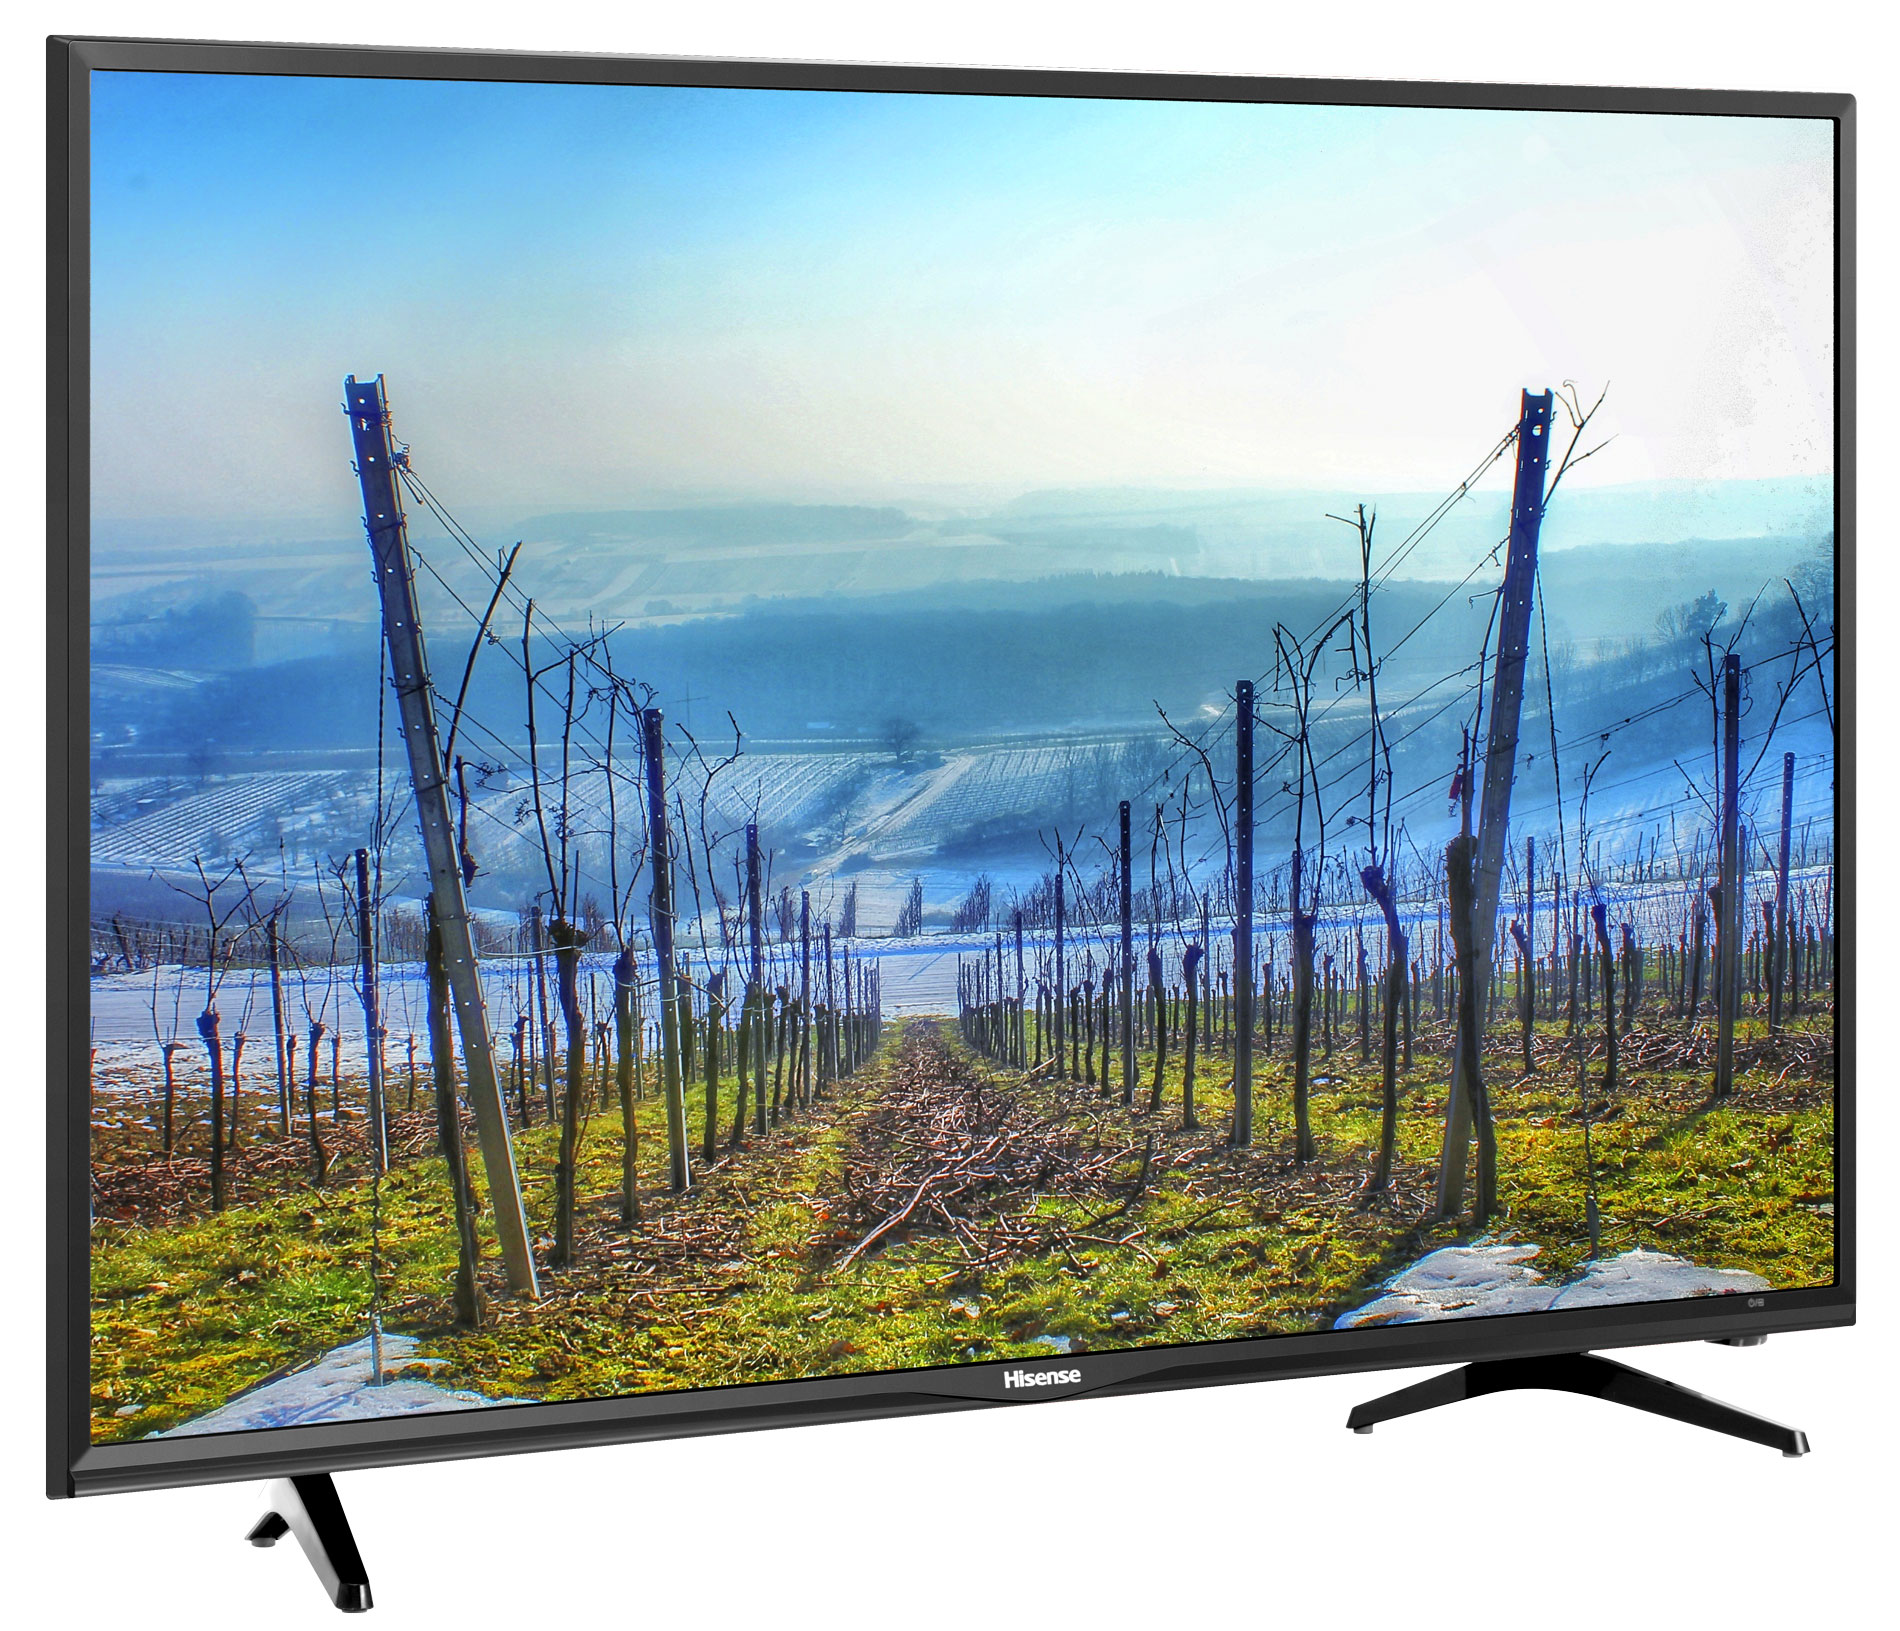 تلویزیون 24 اینچ LCD هایسنس مدل 24N50